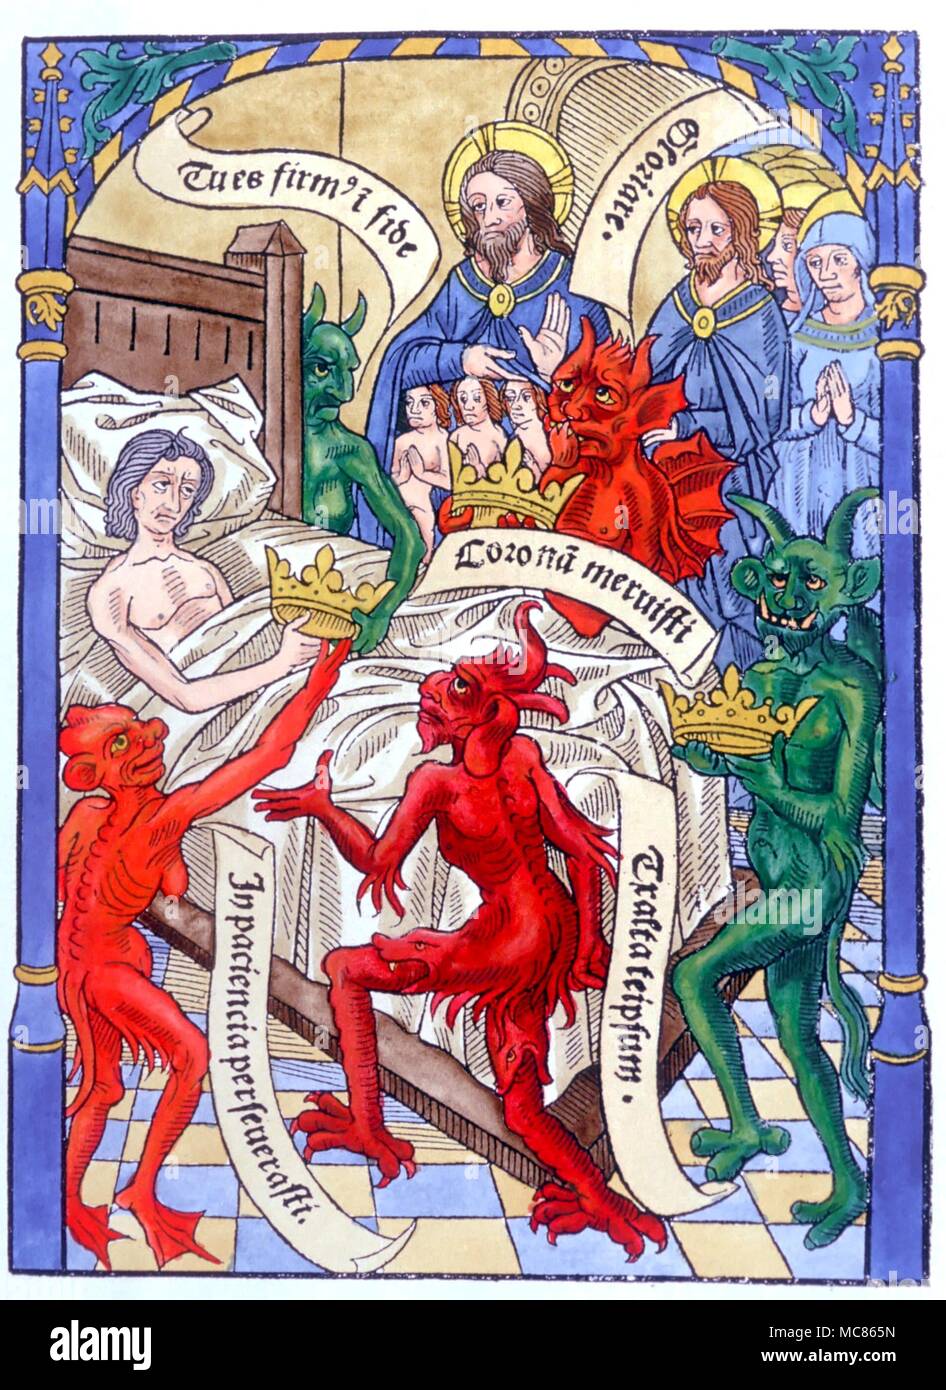 CHRISTIAN - Cristo al capezzale xilografia illustrazione che mostra i demoni e gli angeli attendant al capezzale, con Cristo come Signore supremo. Da un 'ars moriendi bene' di c. 1500 Foto Stock